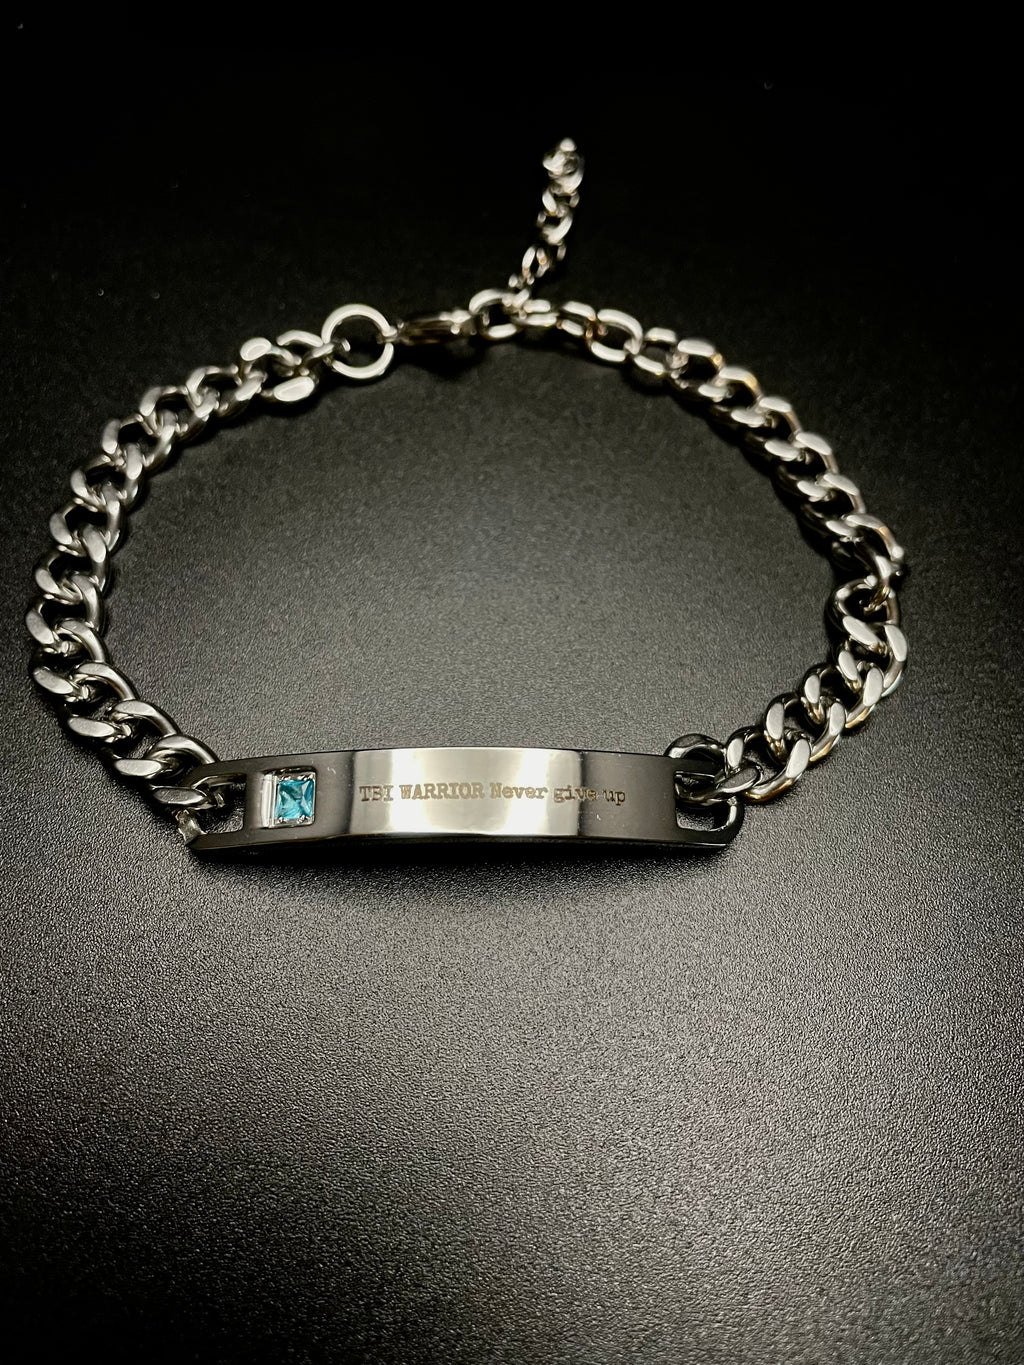 Custom TBI WARRIOR Chain Bracelet with Blue Stone